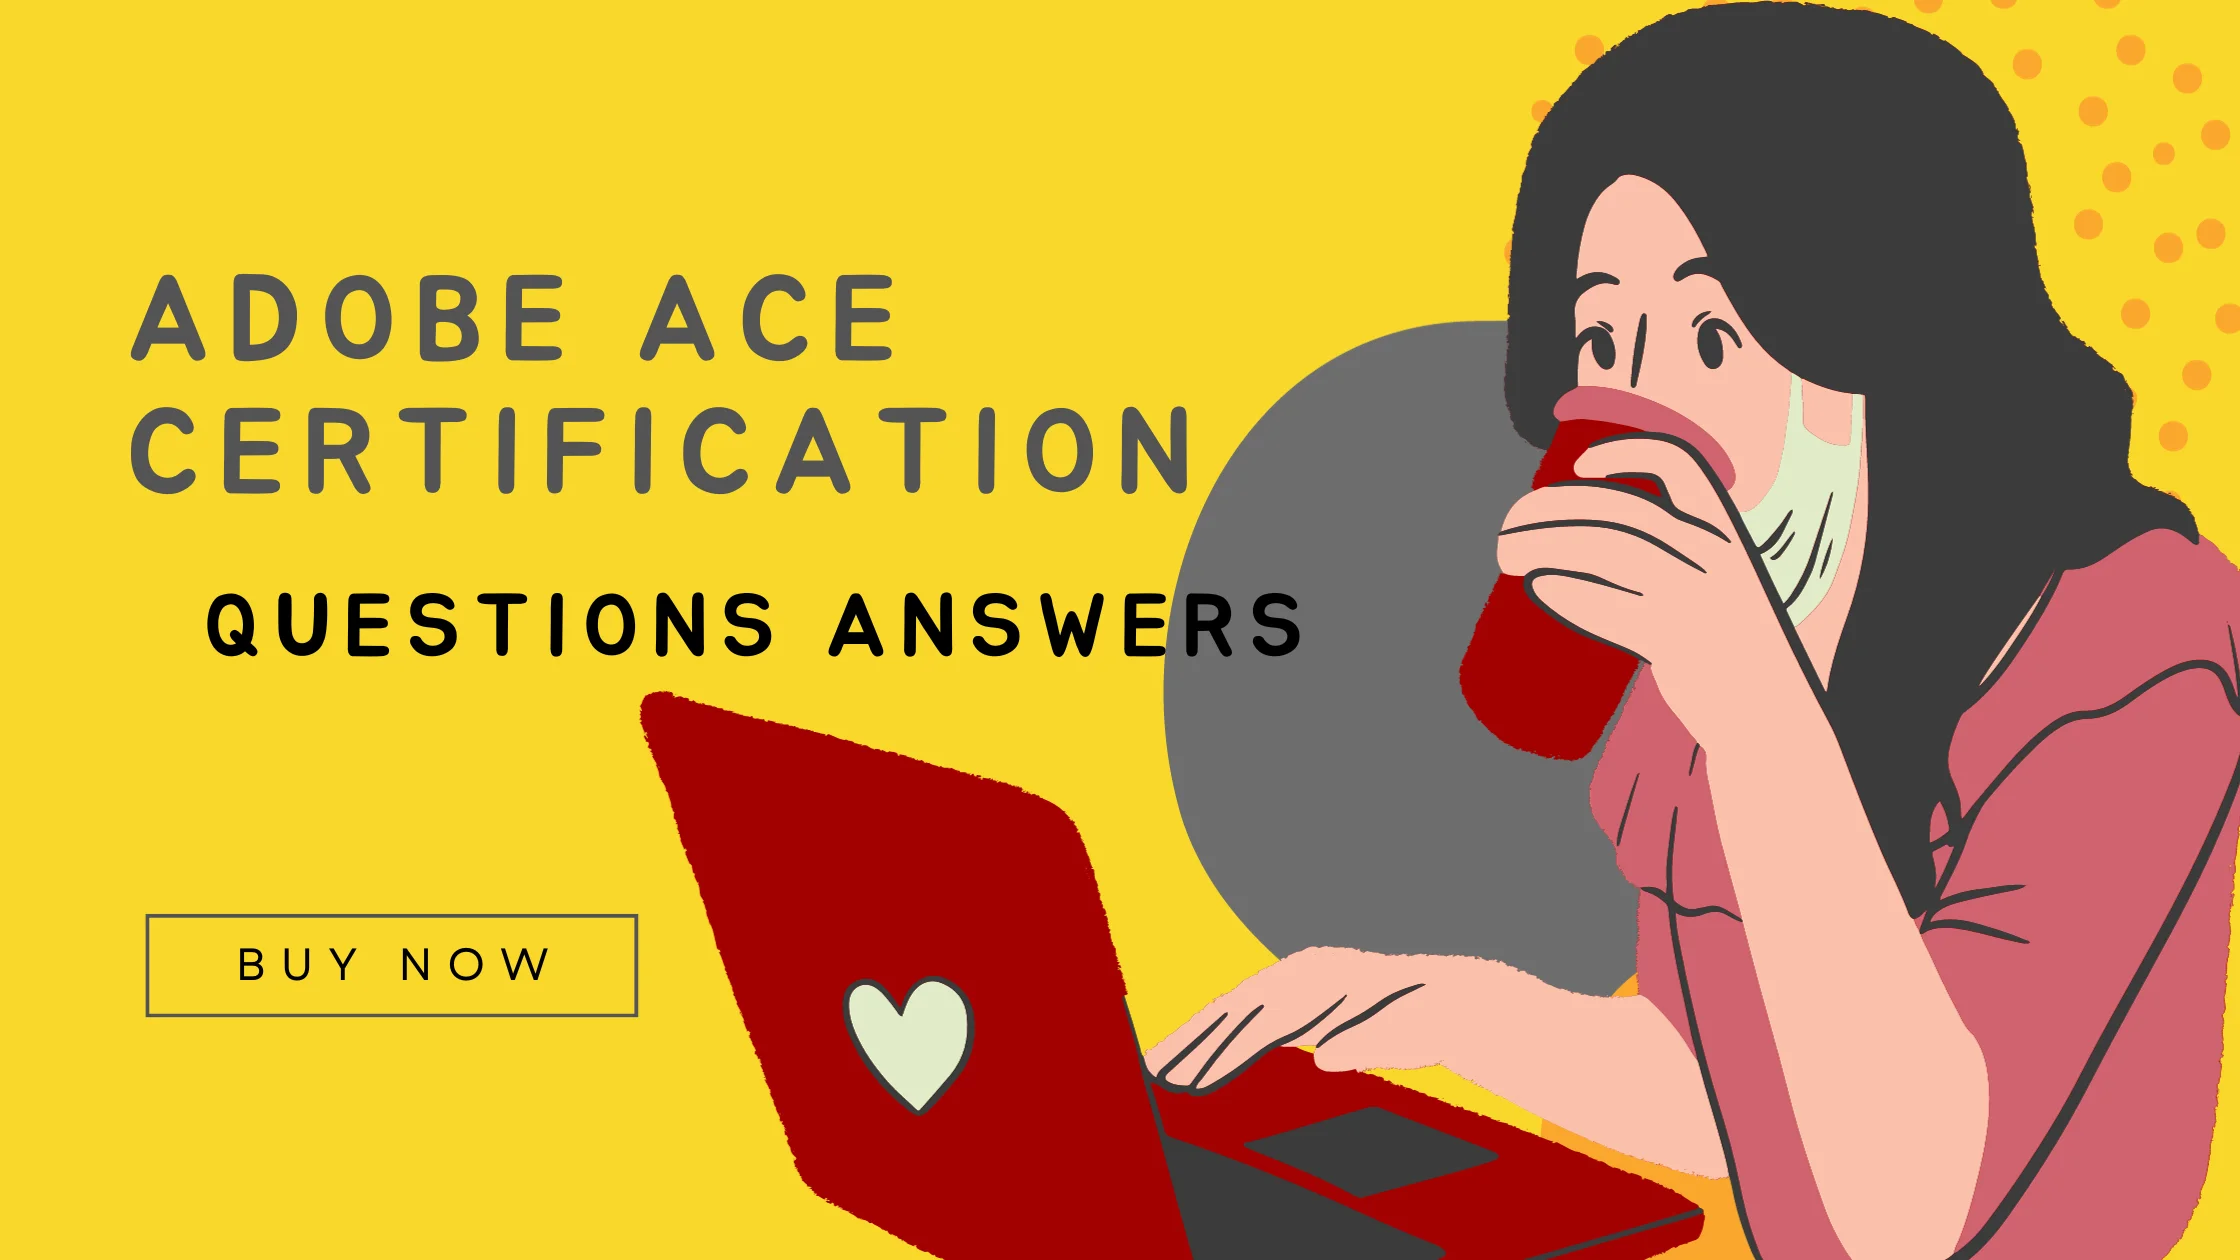 Adobe ACE Certification promotion